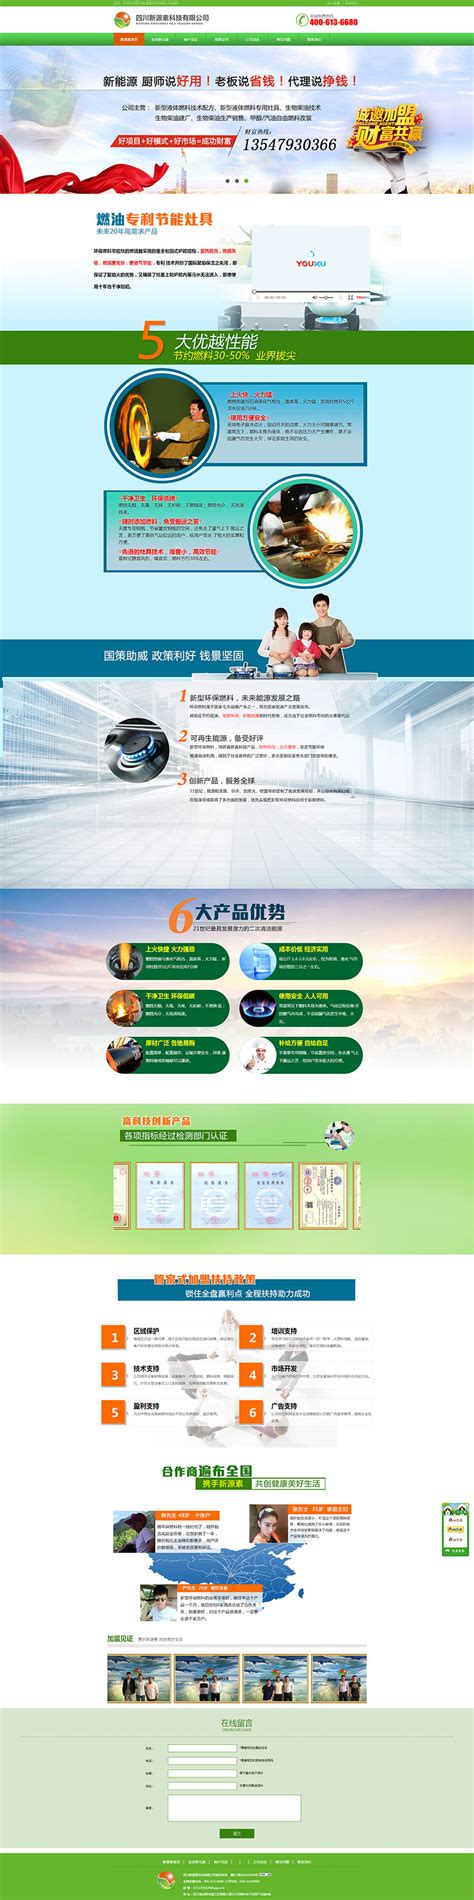 能源网站建设-案例-郑州高端网站建设|郑州网站设计|郑州做网站公司|郑州网站托管